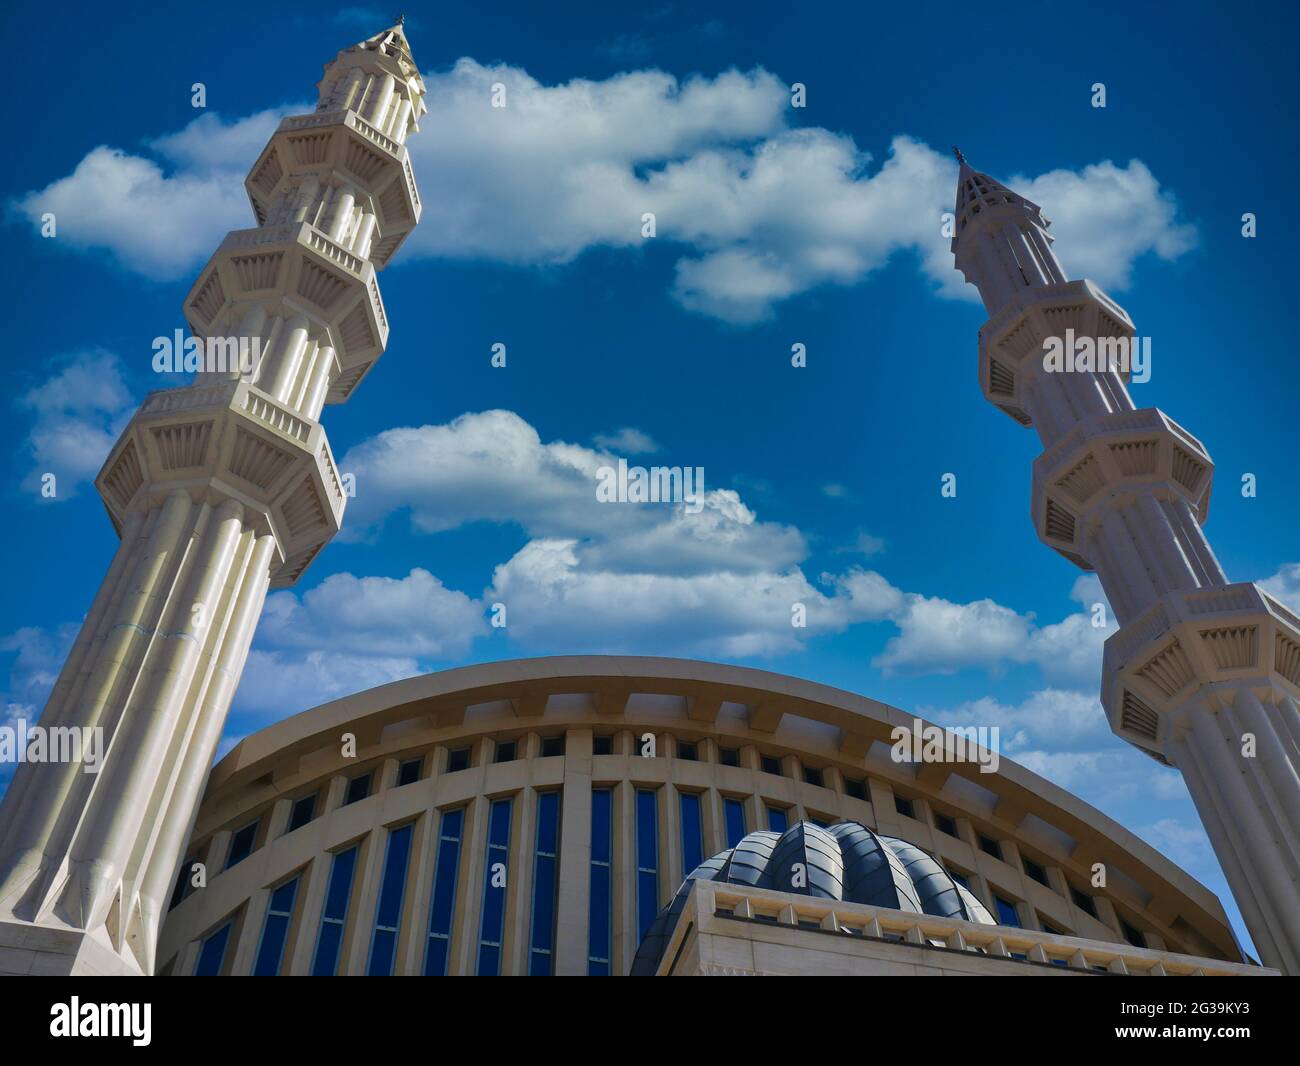 Tiro de ángulo bajo de los minaretes de la Mezquita Central de Avcilar bajo un cielo azul nublado Foto de stock